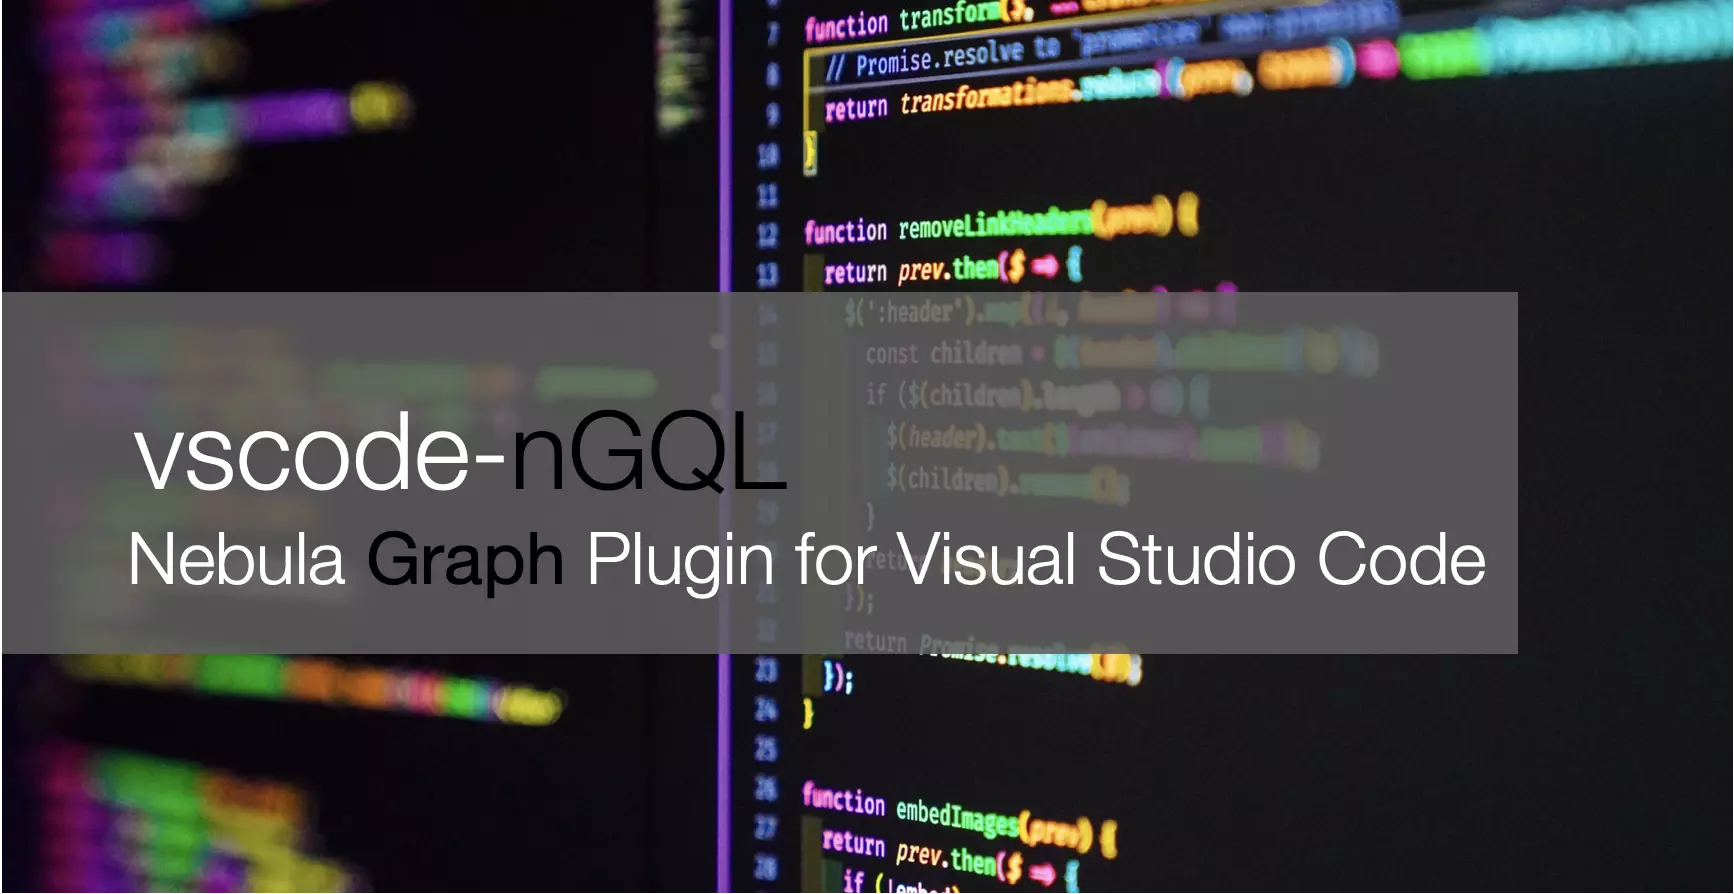 VSCode-ngql 是 Nebula Graph 的 VS Code 之中对 nGQL 语法高亮的插件。